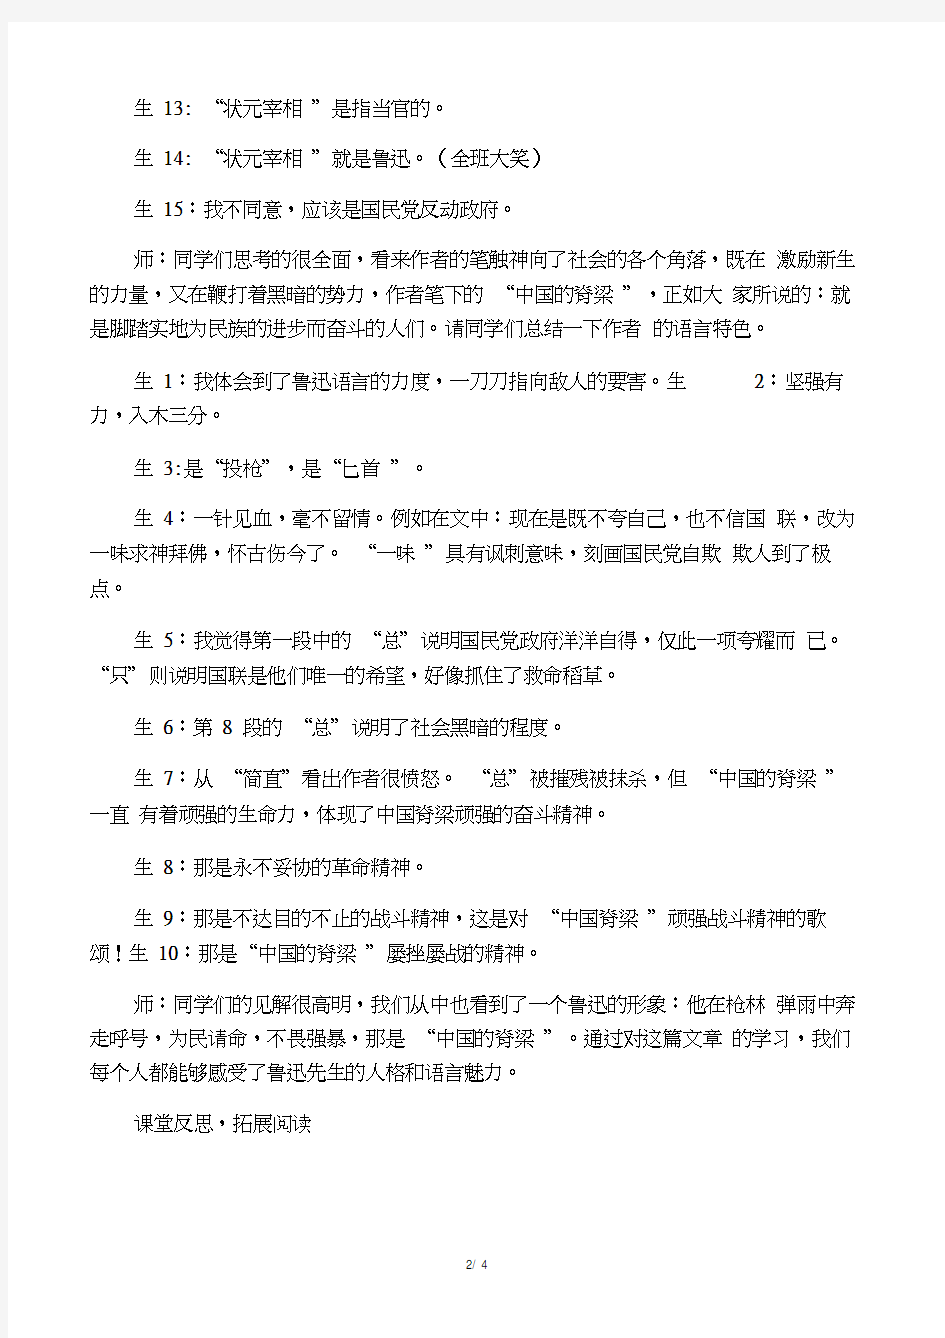 九年级语文上册中国人失掉自(20201130170356)